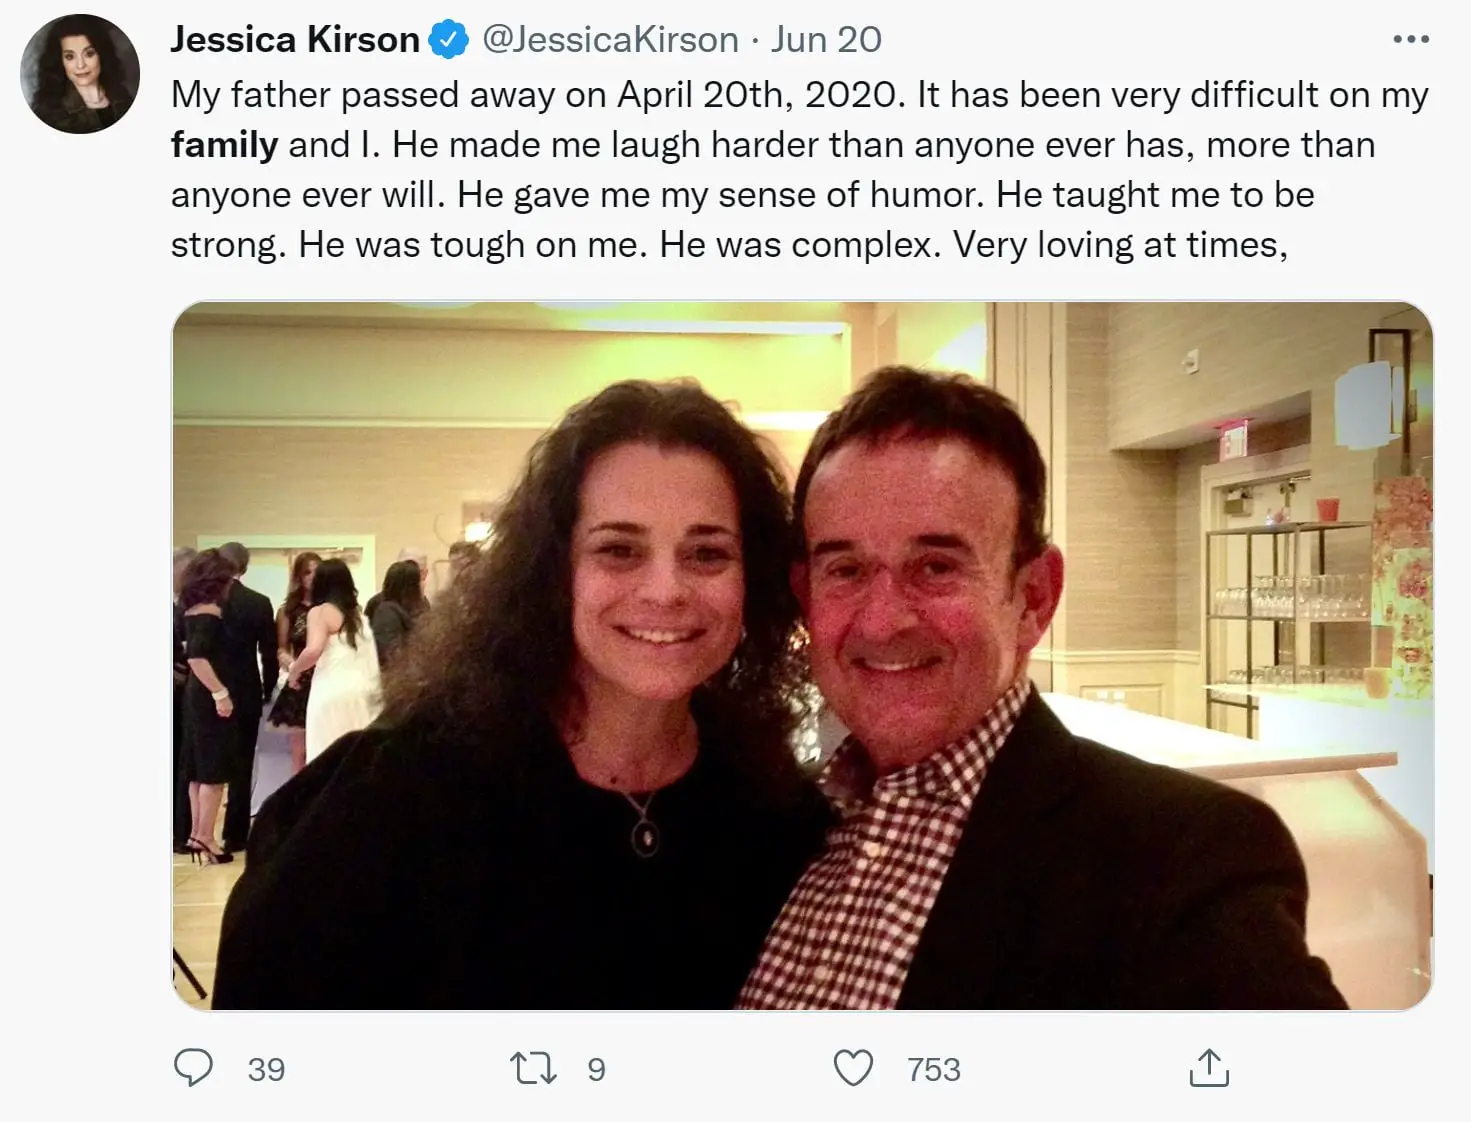 Jessica Kirson's Father